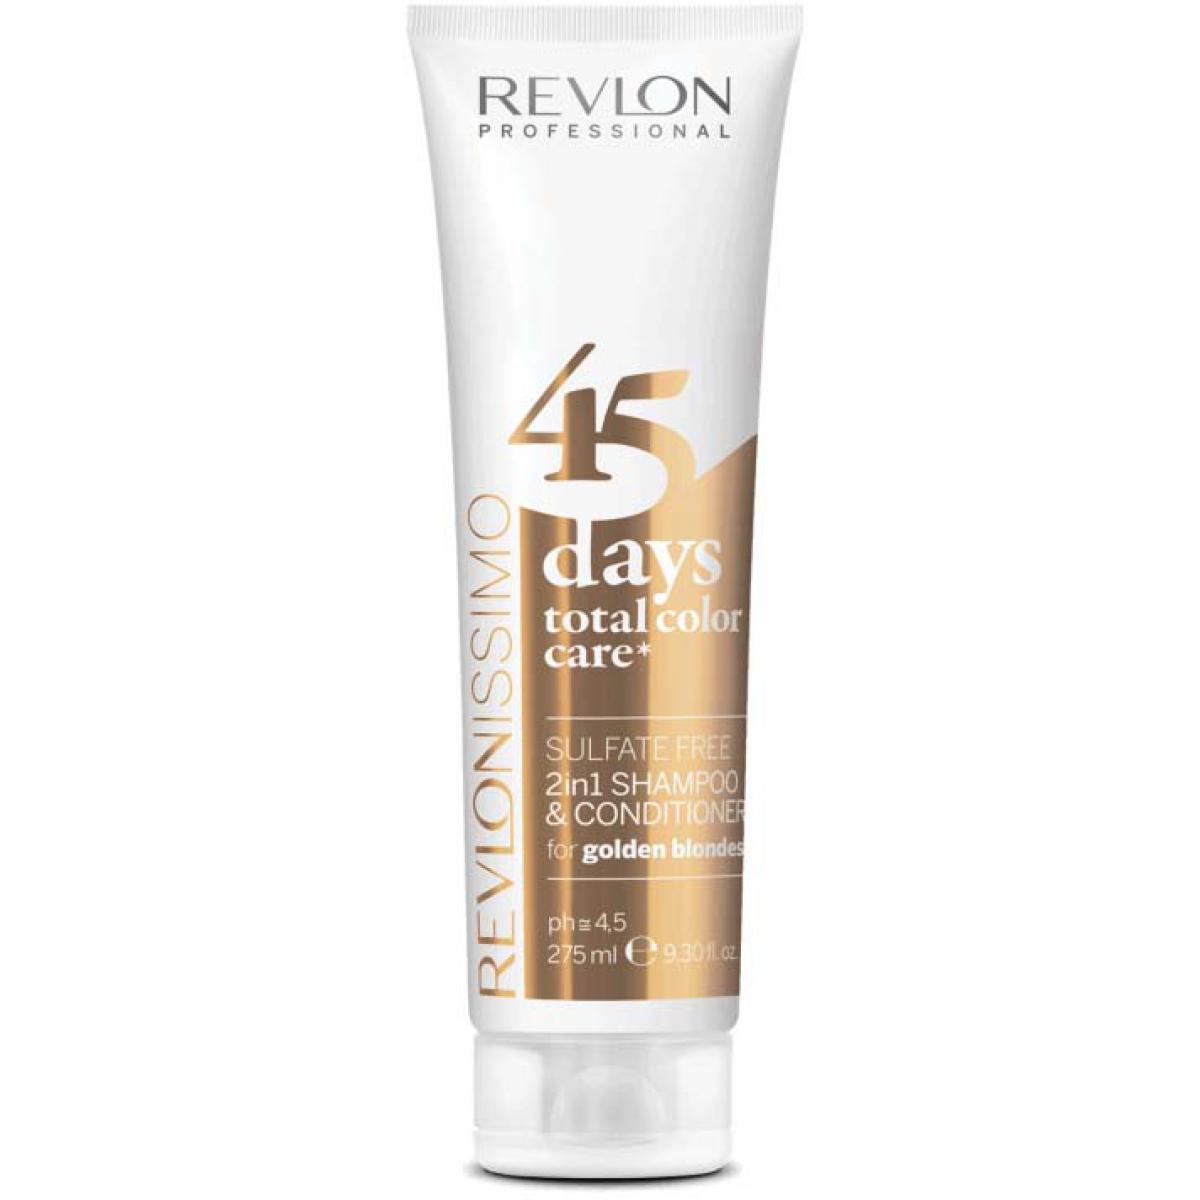 Shampooing Et Après-Shampooing Protecteur De Couleur 2en1 45 Days - Golden Blonde